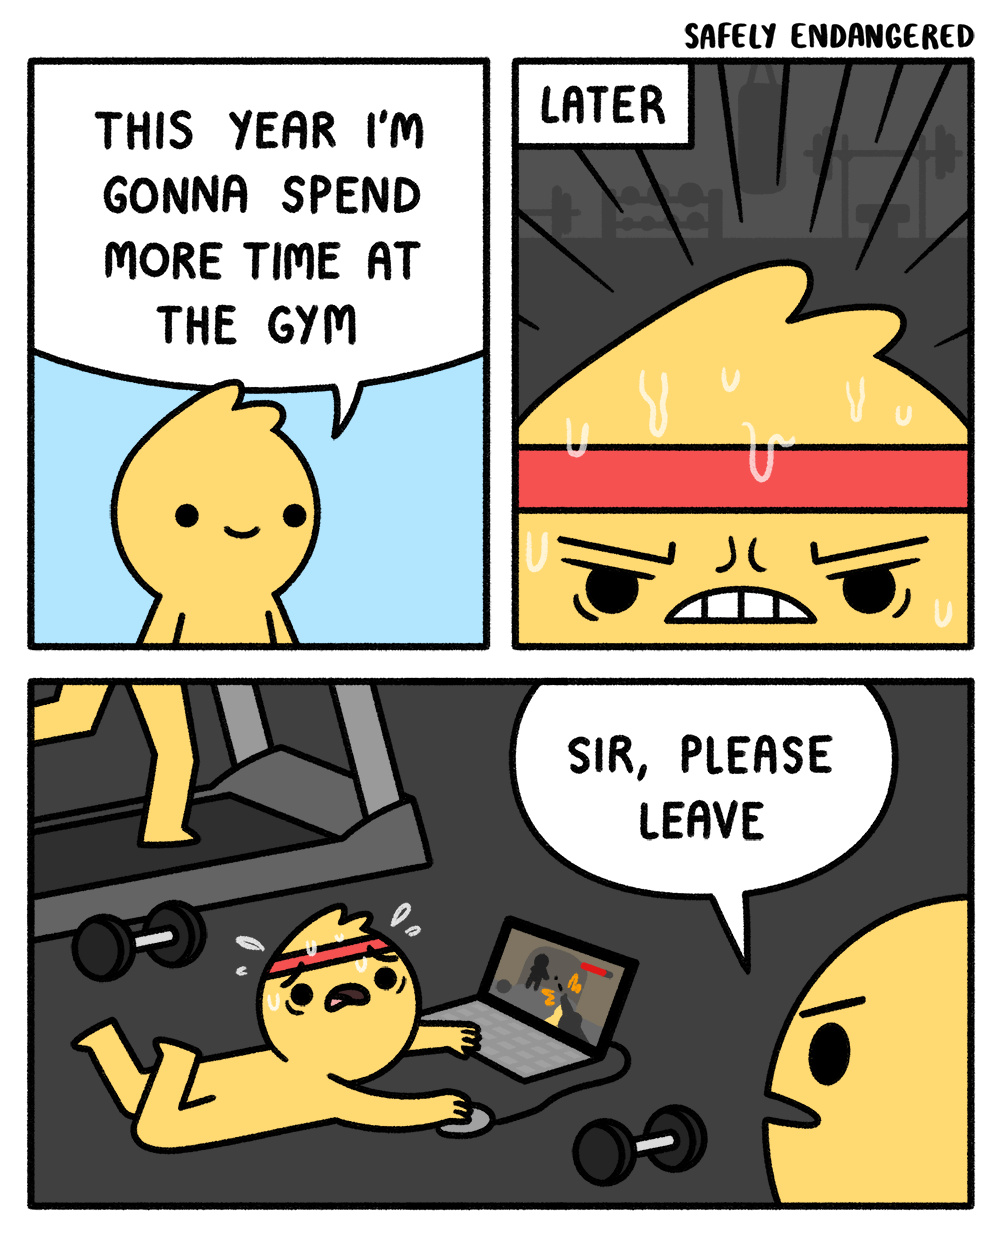 gym - meme